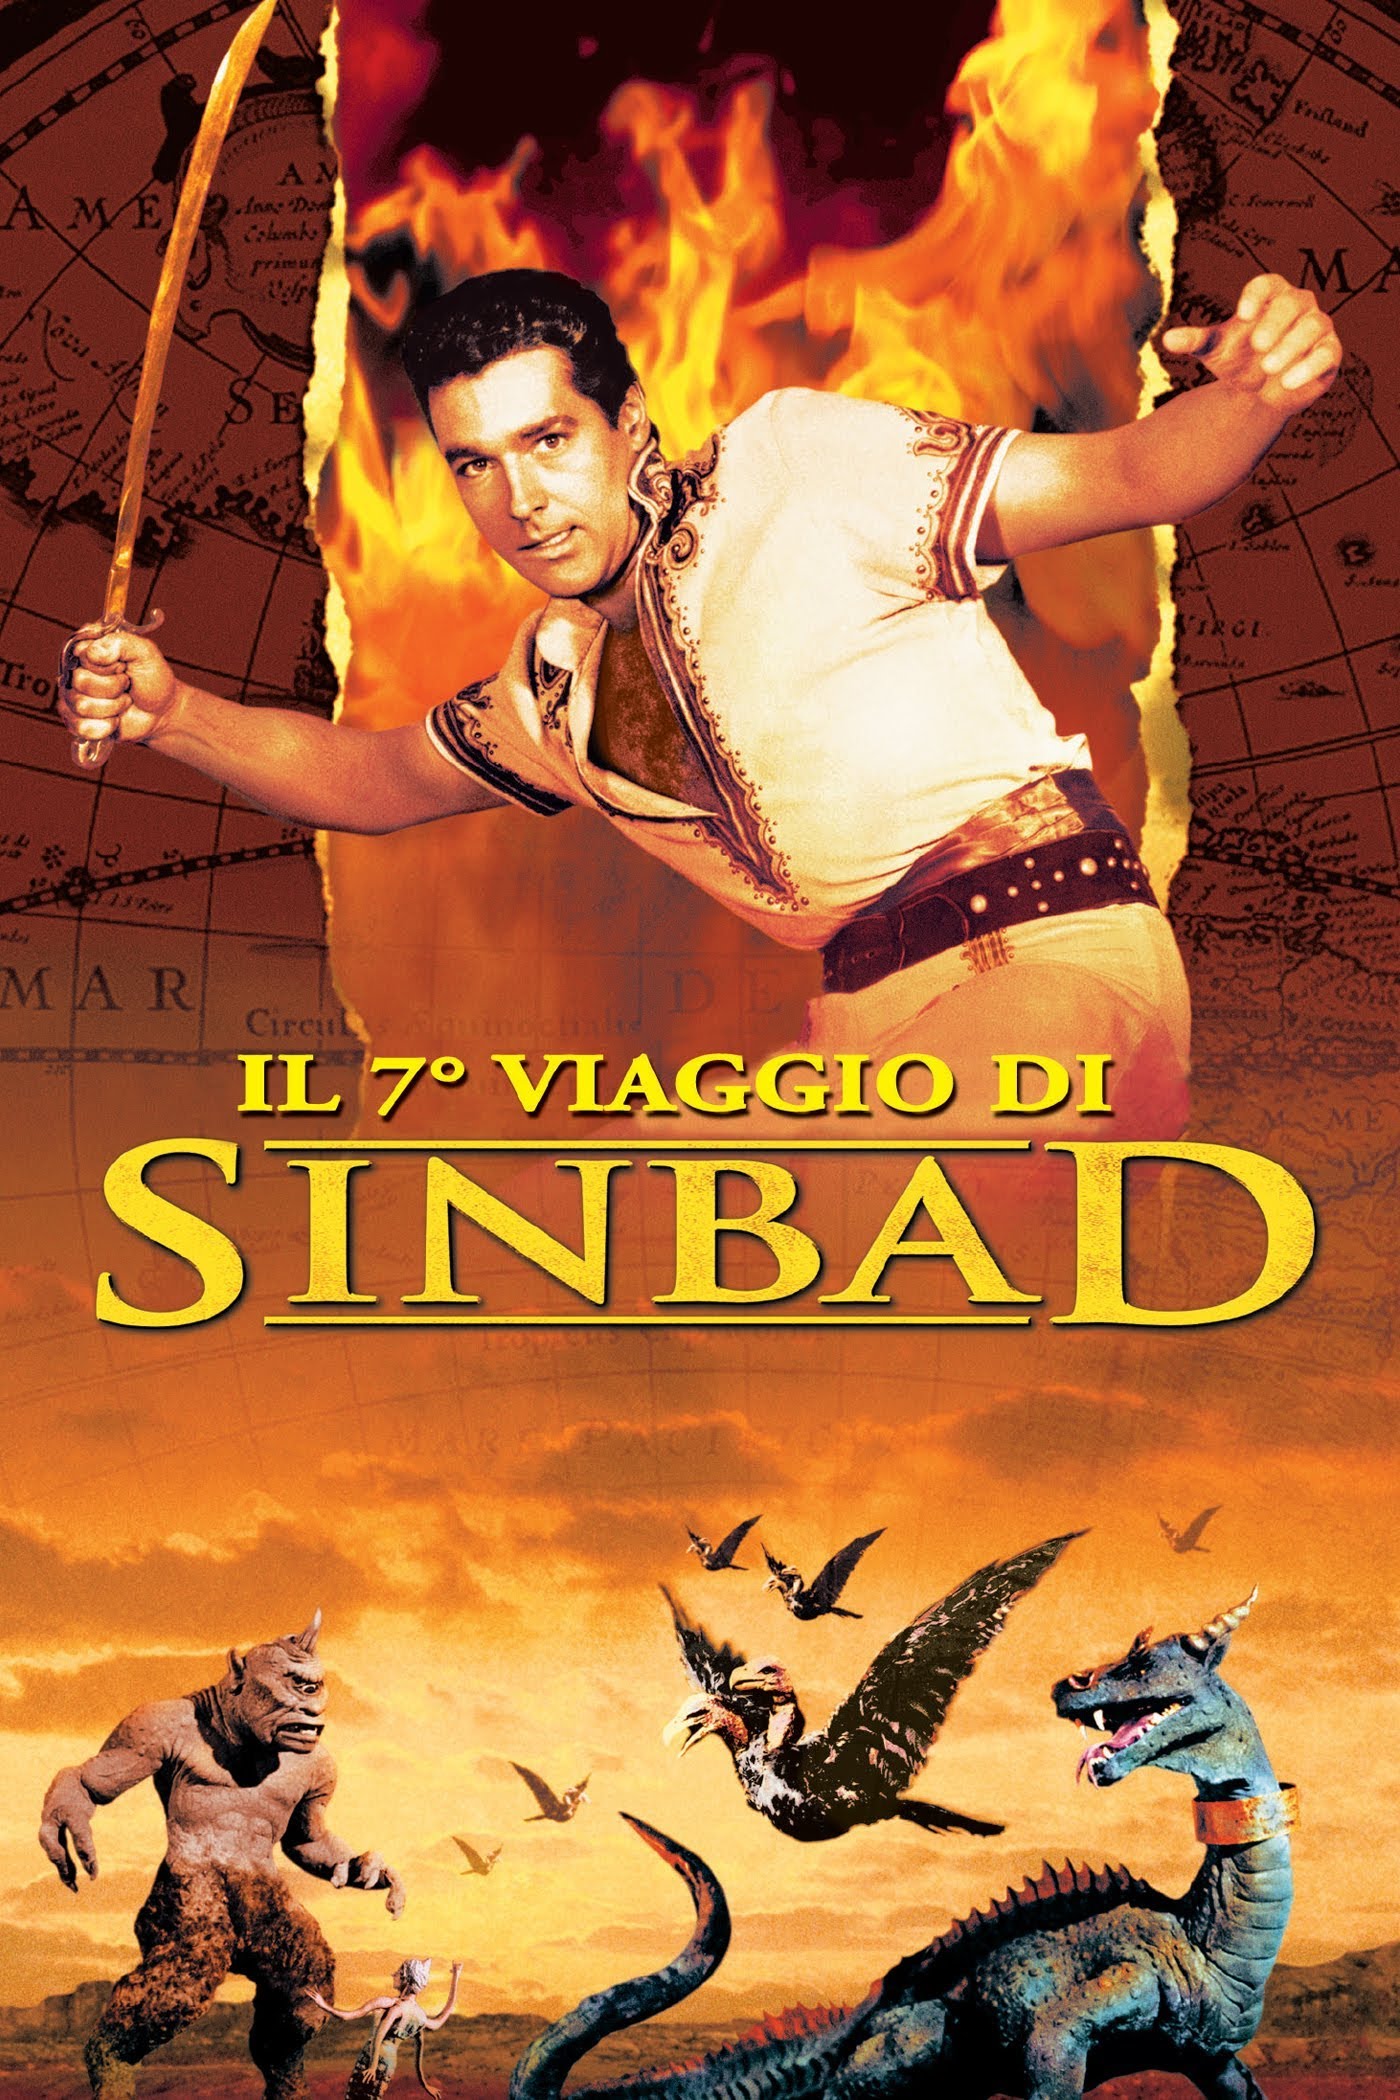 Il 7° viaggio di Sinbad [HD] (1958)